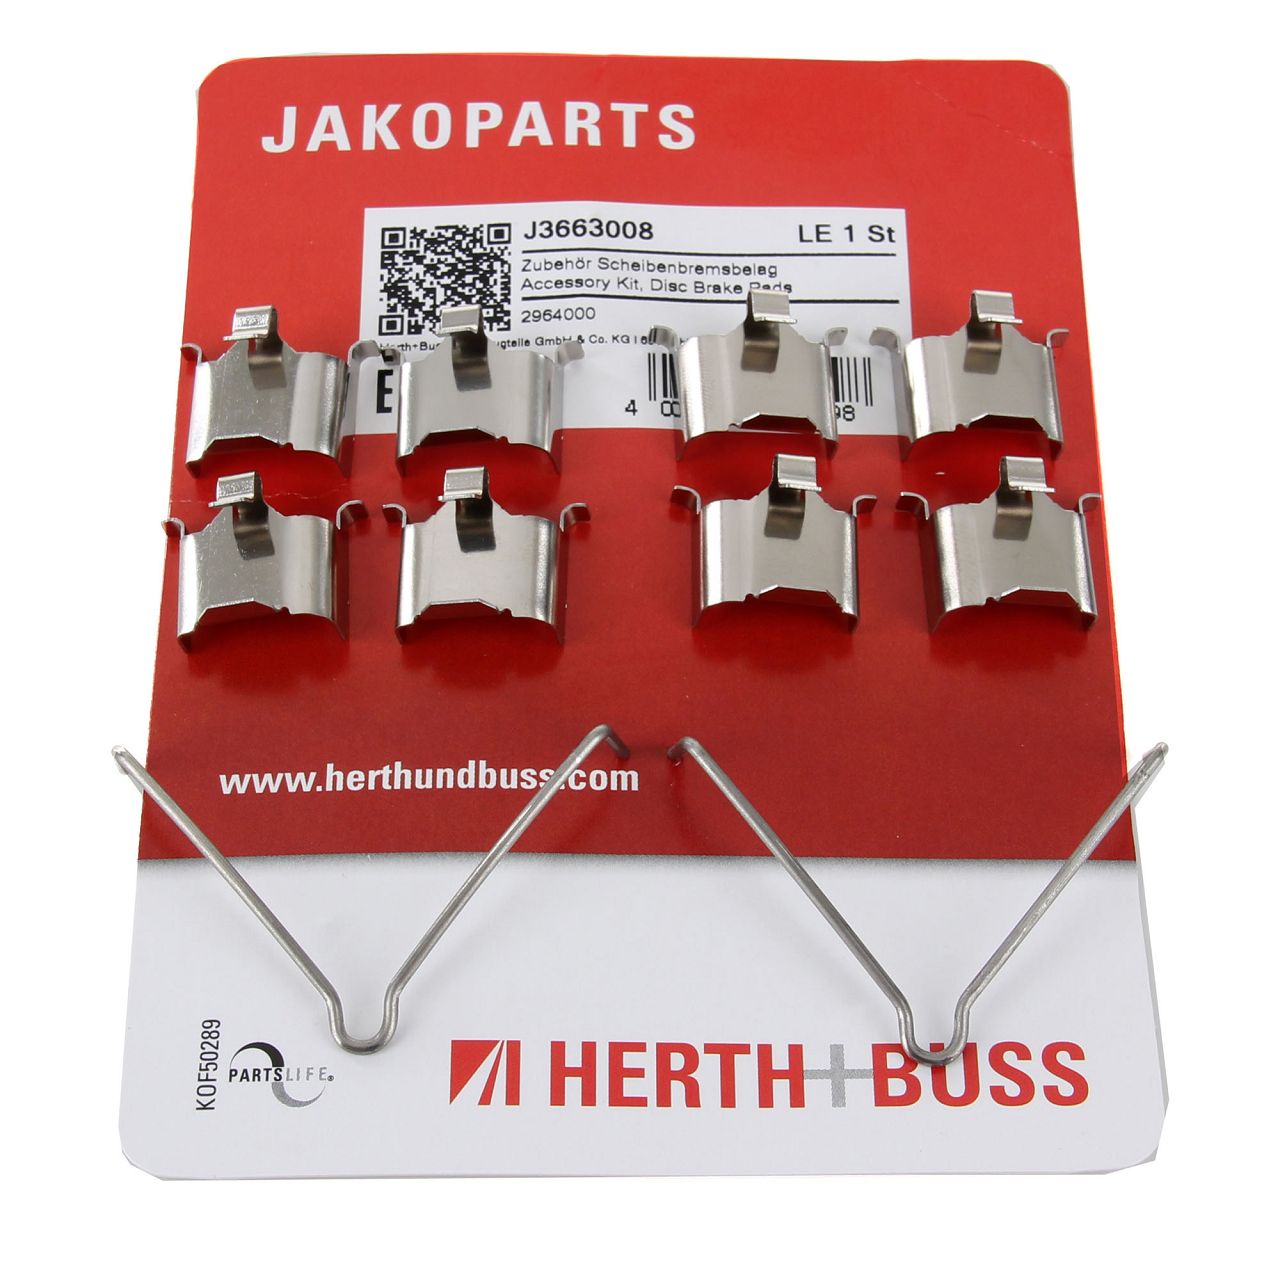 HERTH+BUSS JAKOPARTS Bremsbeläge Zubehörsatz für MAZDA 323 6 626 PREMACY RX 7 h